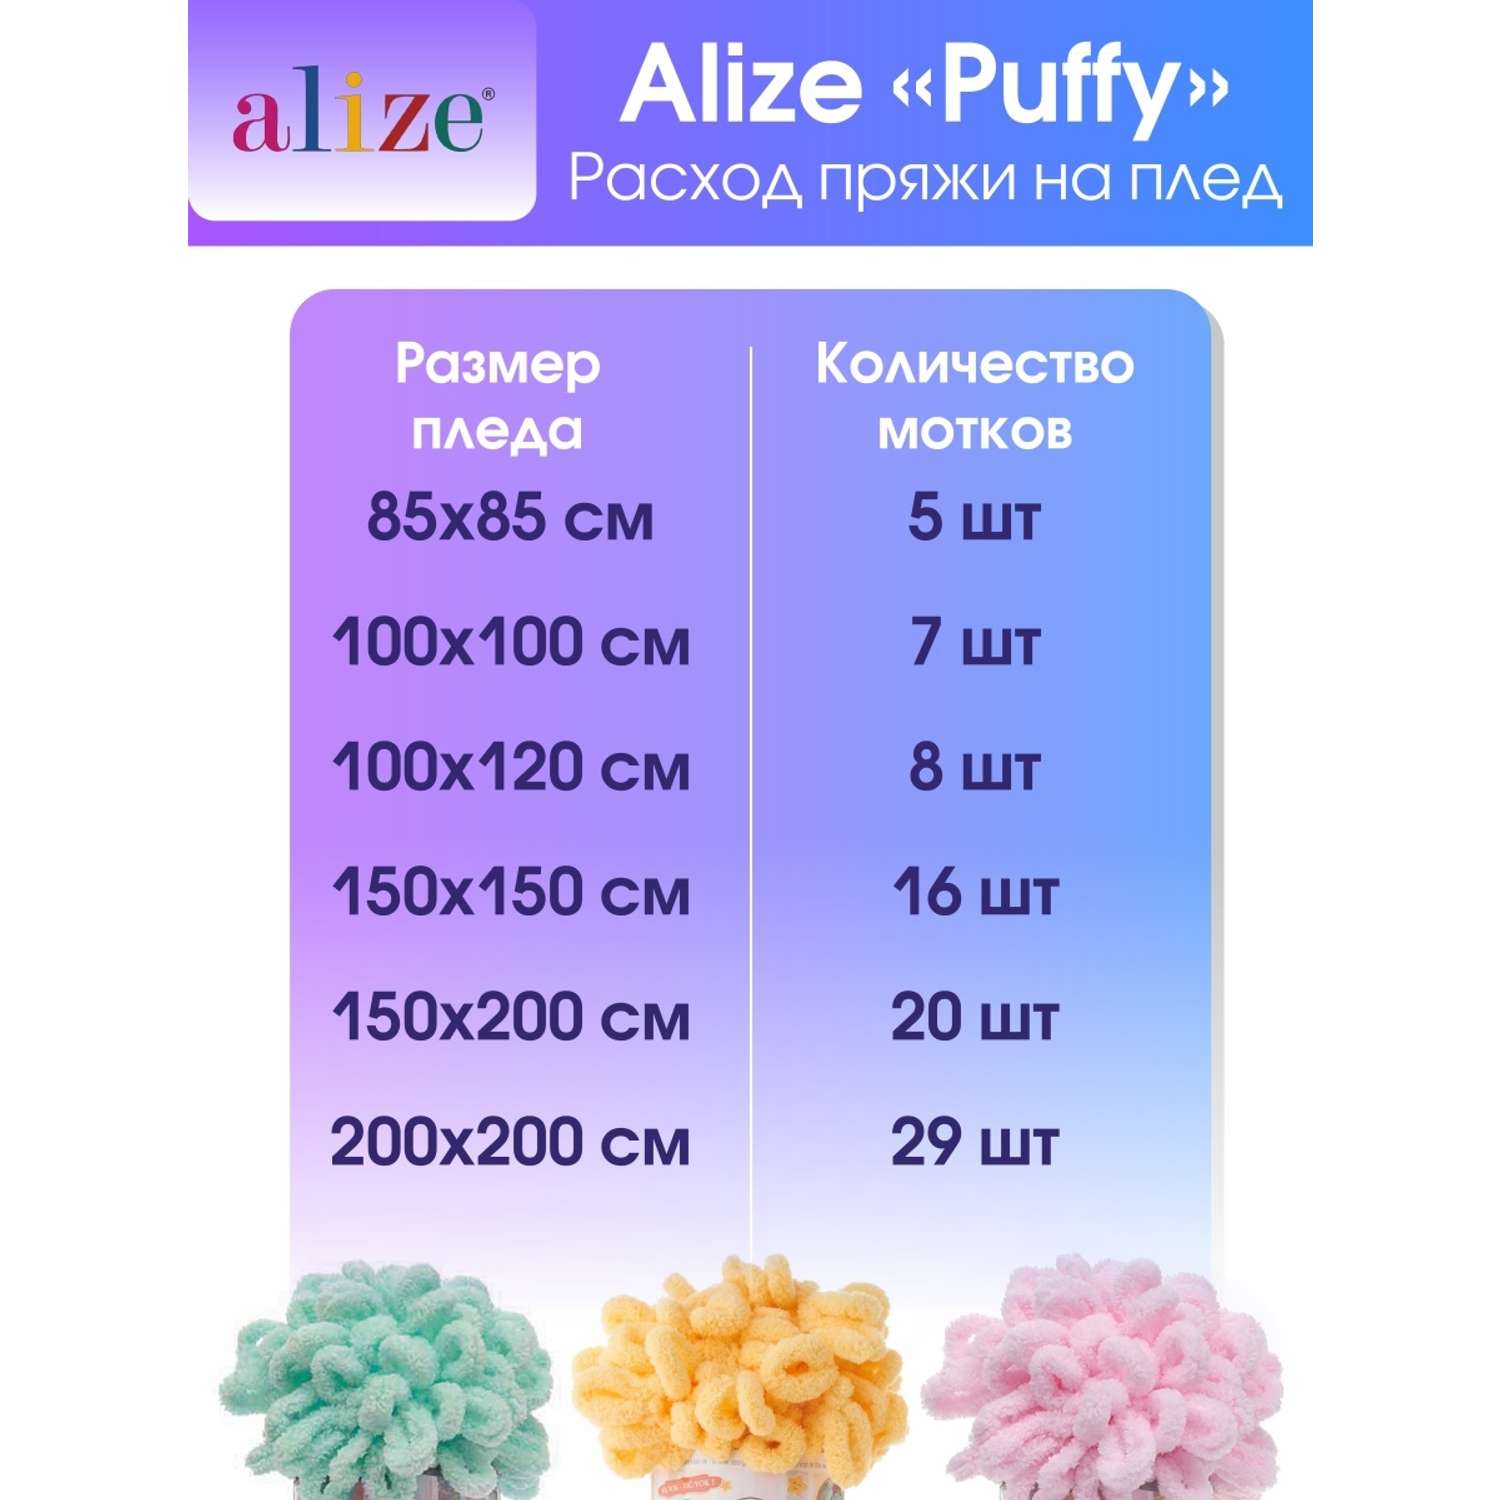 Пряжа для вязания Alize puffy 100 г 9 м микрополиэстер фантазийная плюшевая 597 корица 5 мотков - фото 6